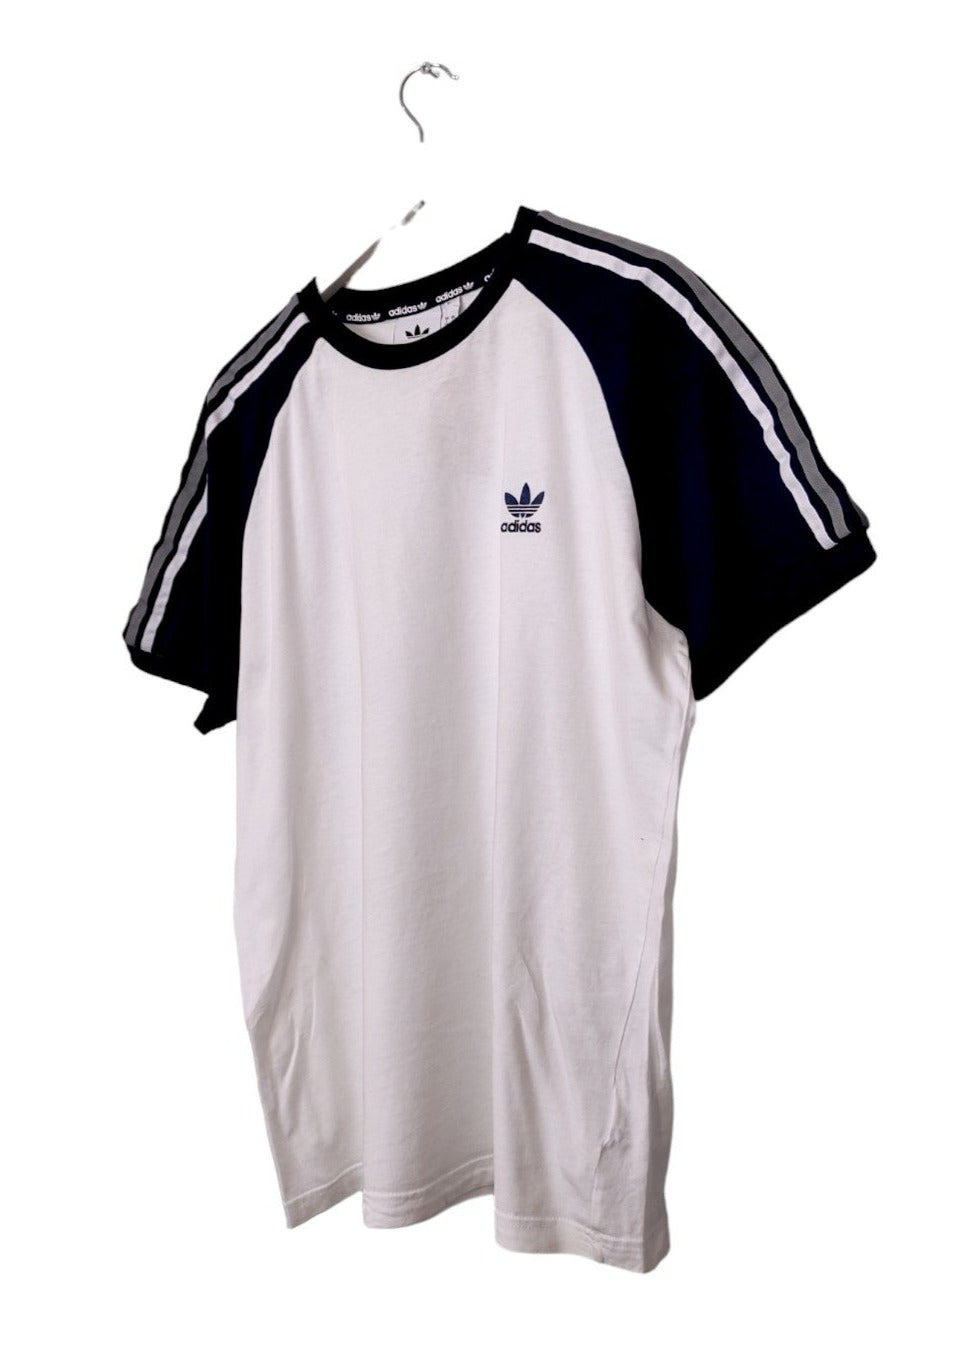 Αθλητική Ανδρική Μπλούζα - T-Shirt ADIDAS σε Λευκό-Σκούρο Μπλε χρώμα (Large)